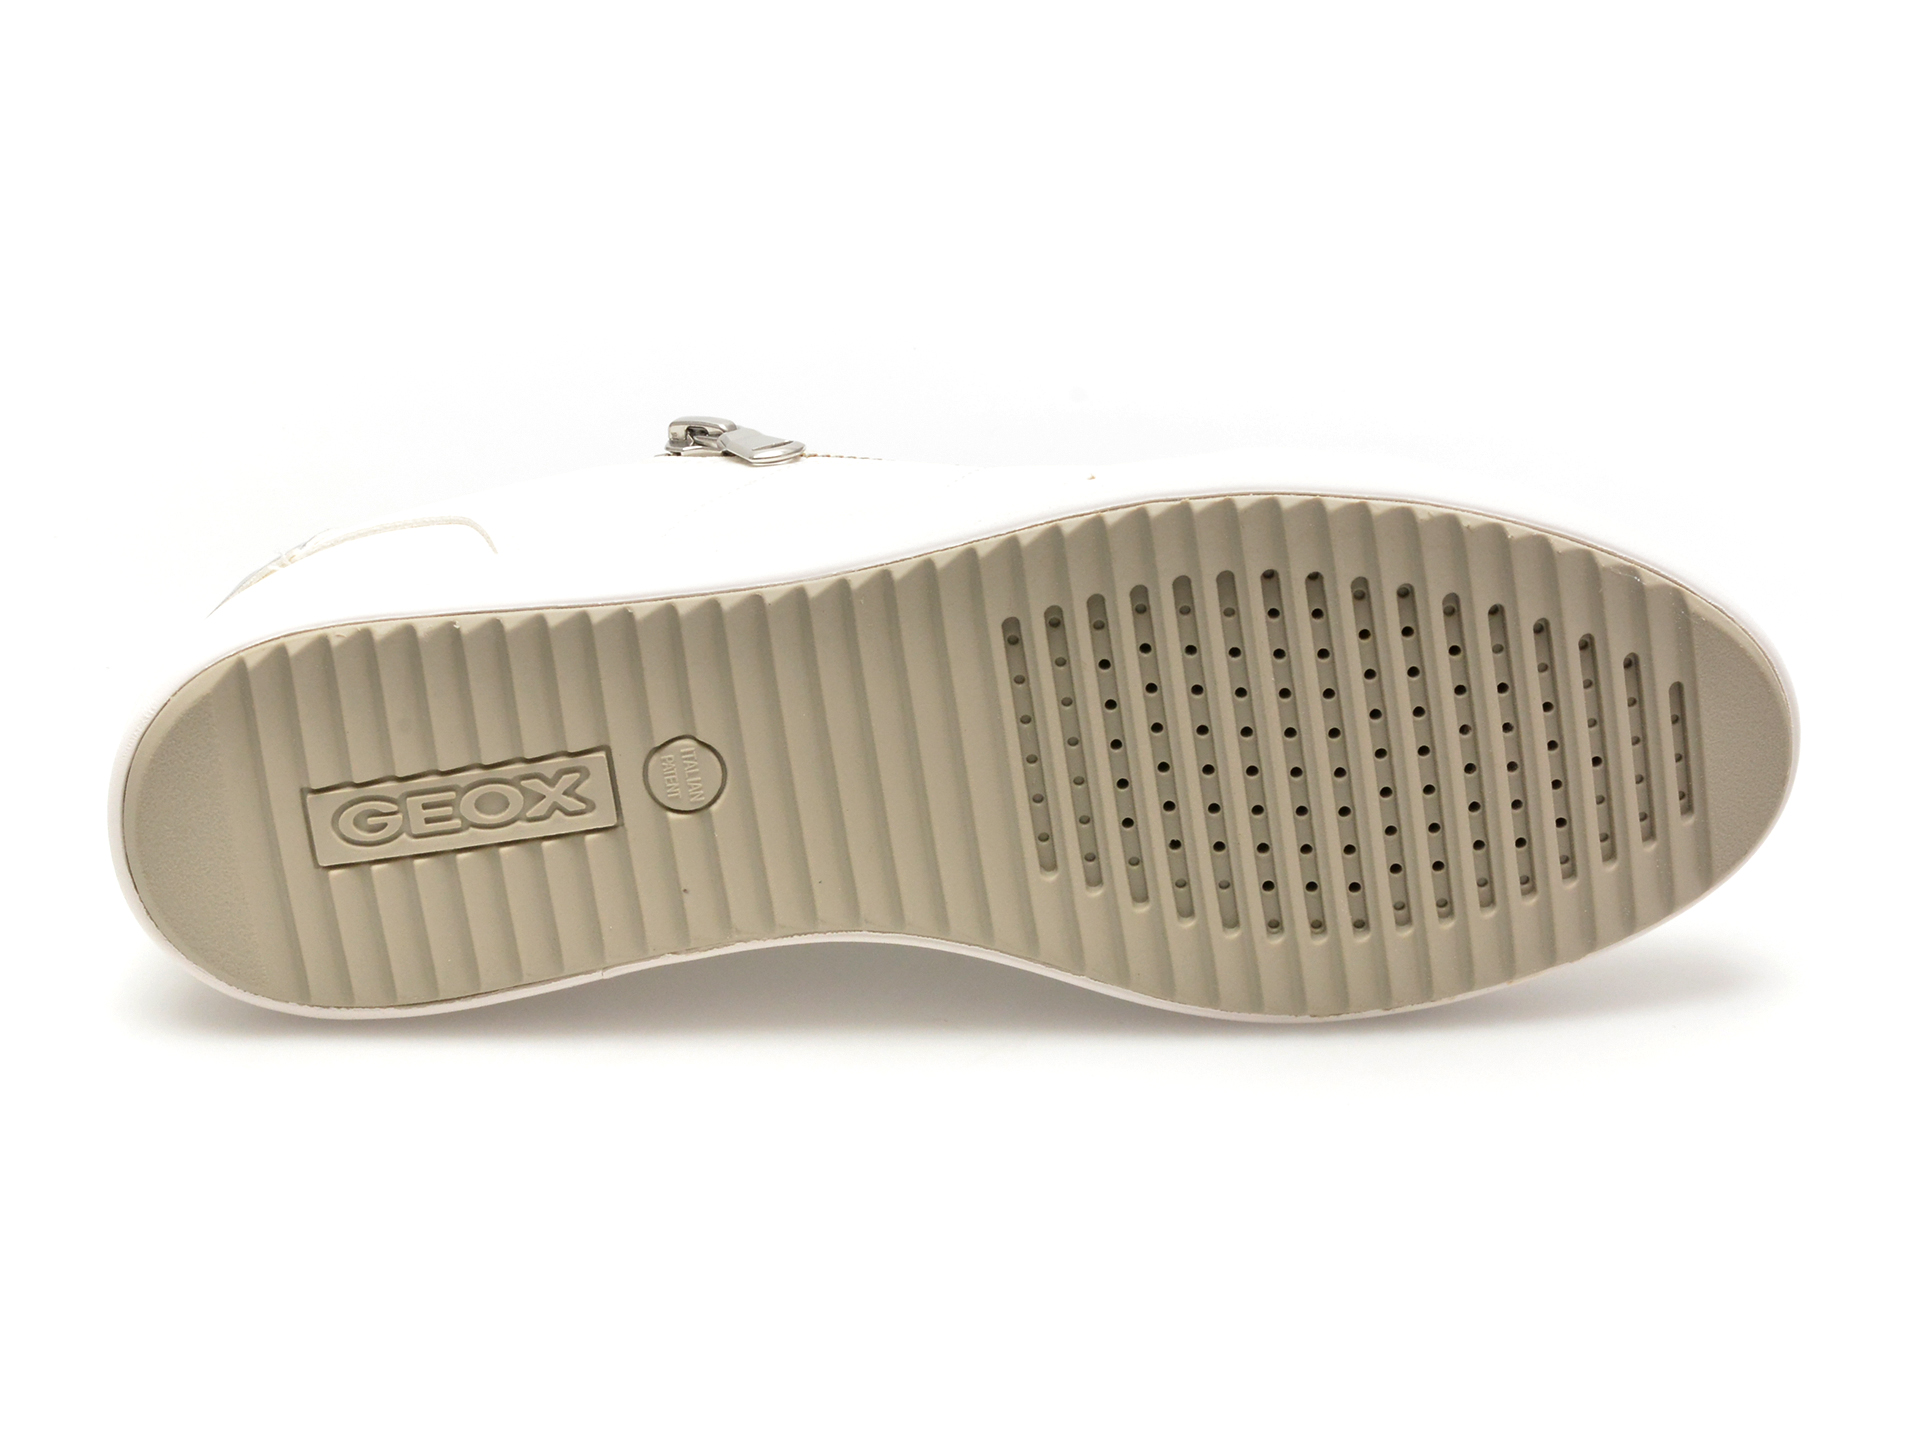 Pantofi GEOX albi, D026HA, din piele ecologica